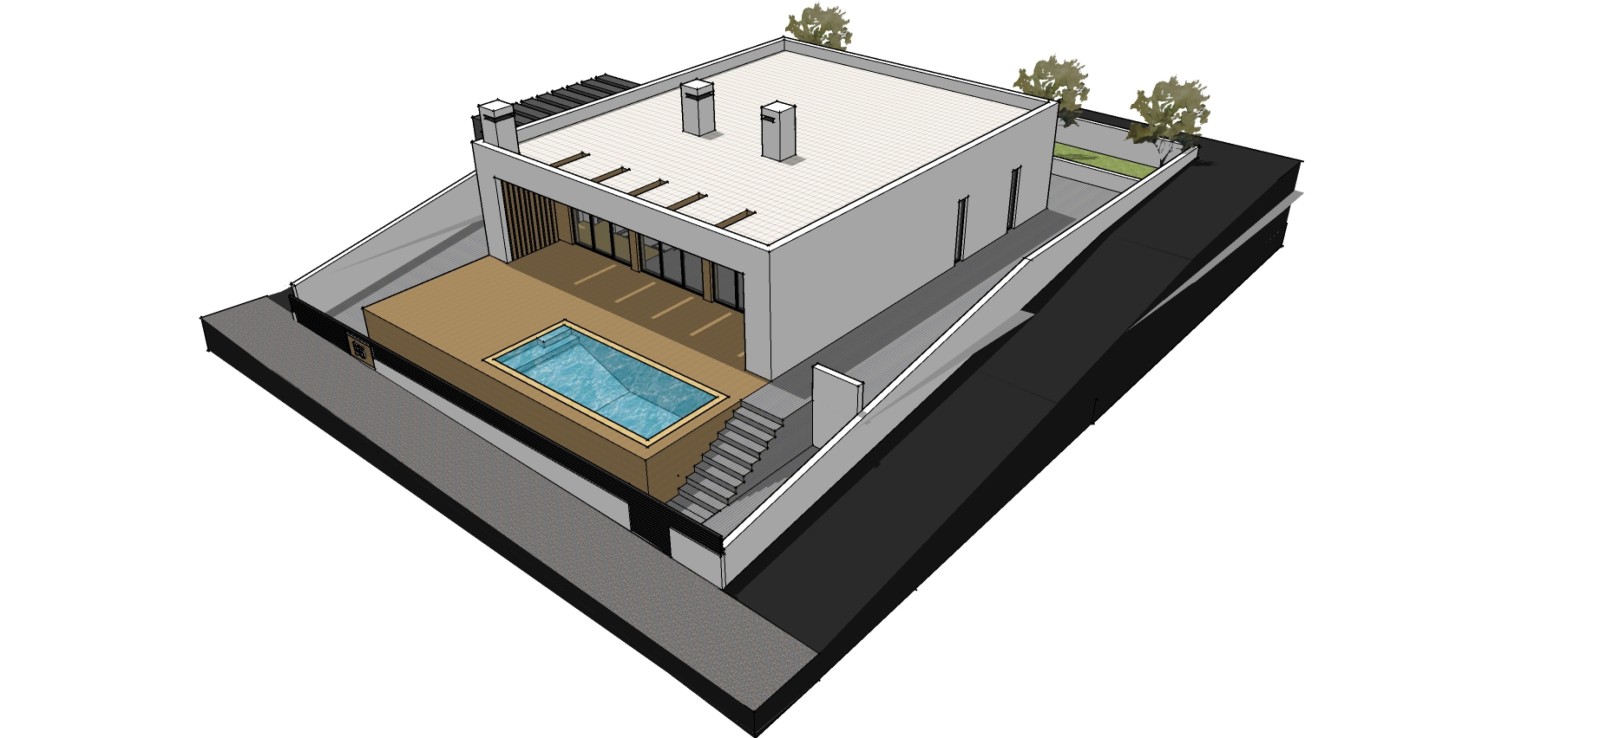 Villa de 3 dormitorios en construcción, con piscina, en venta en Altura, Algarve_220361